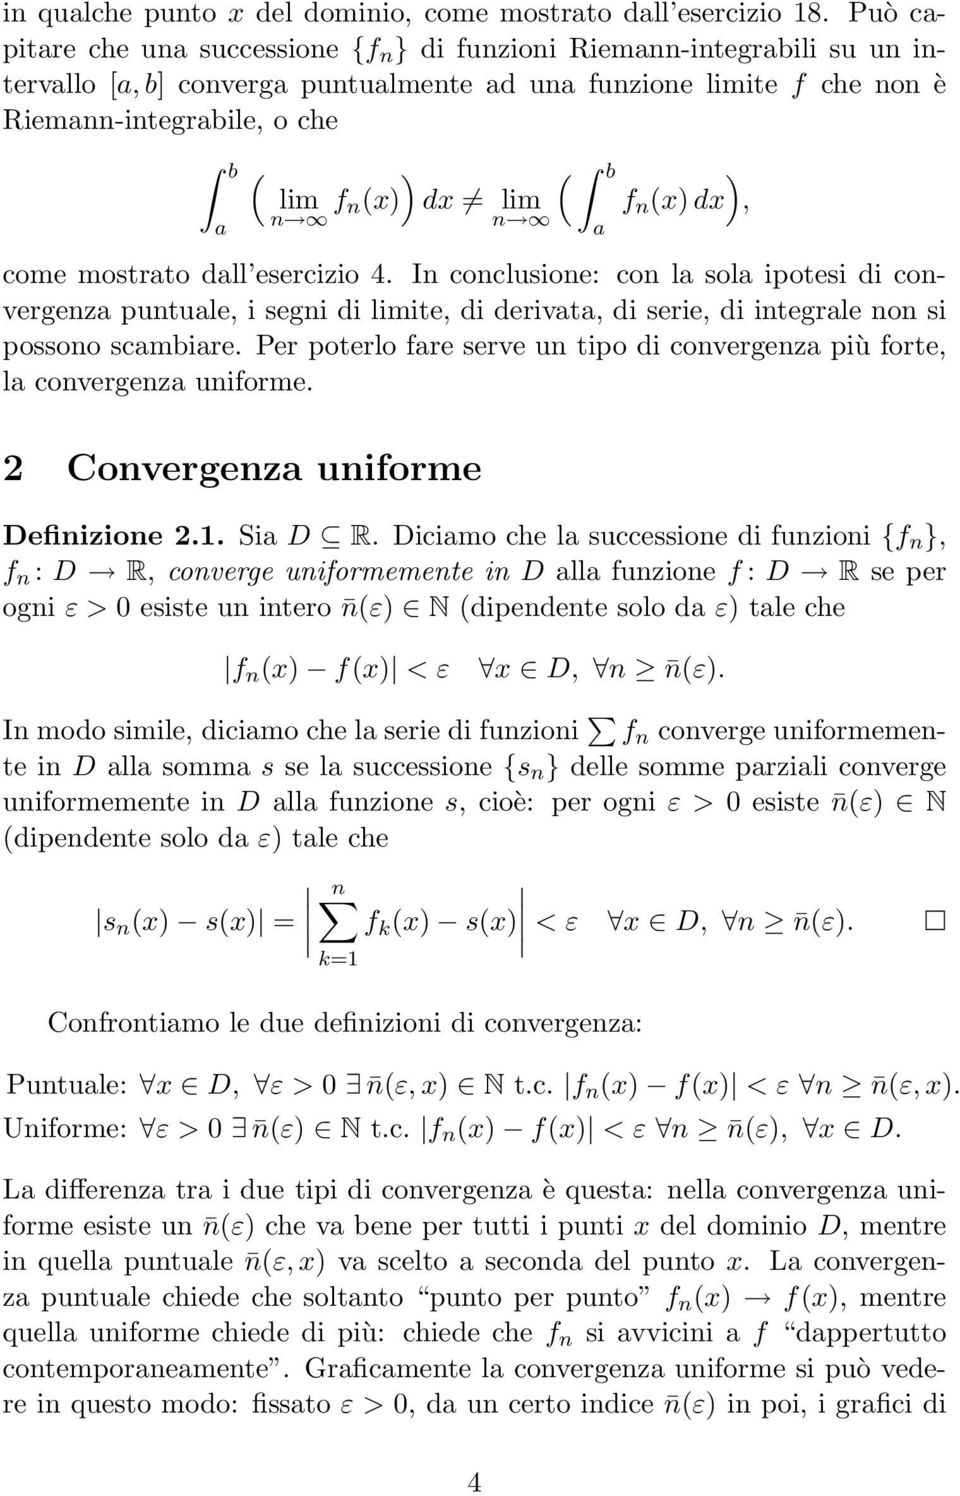 esercizio 4. In conclusione: con l sol ipotesi di convergenz puntule, i segni di ite, di derivt, di serie, di integrle non si possono scmbire.